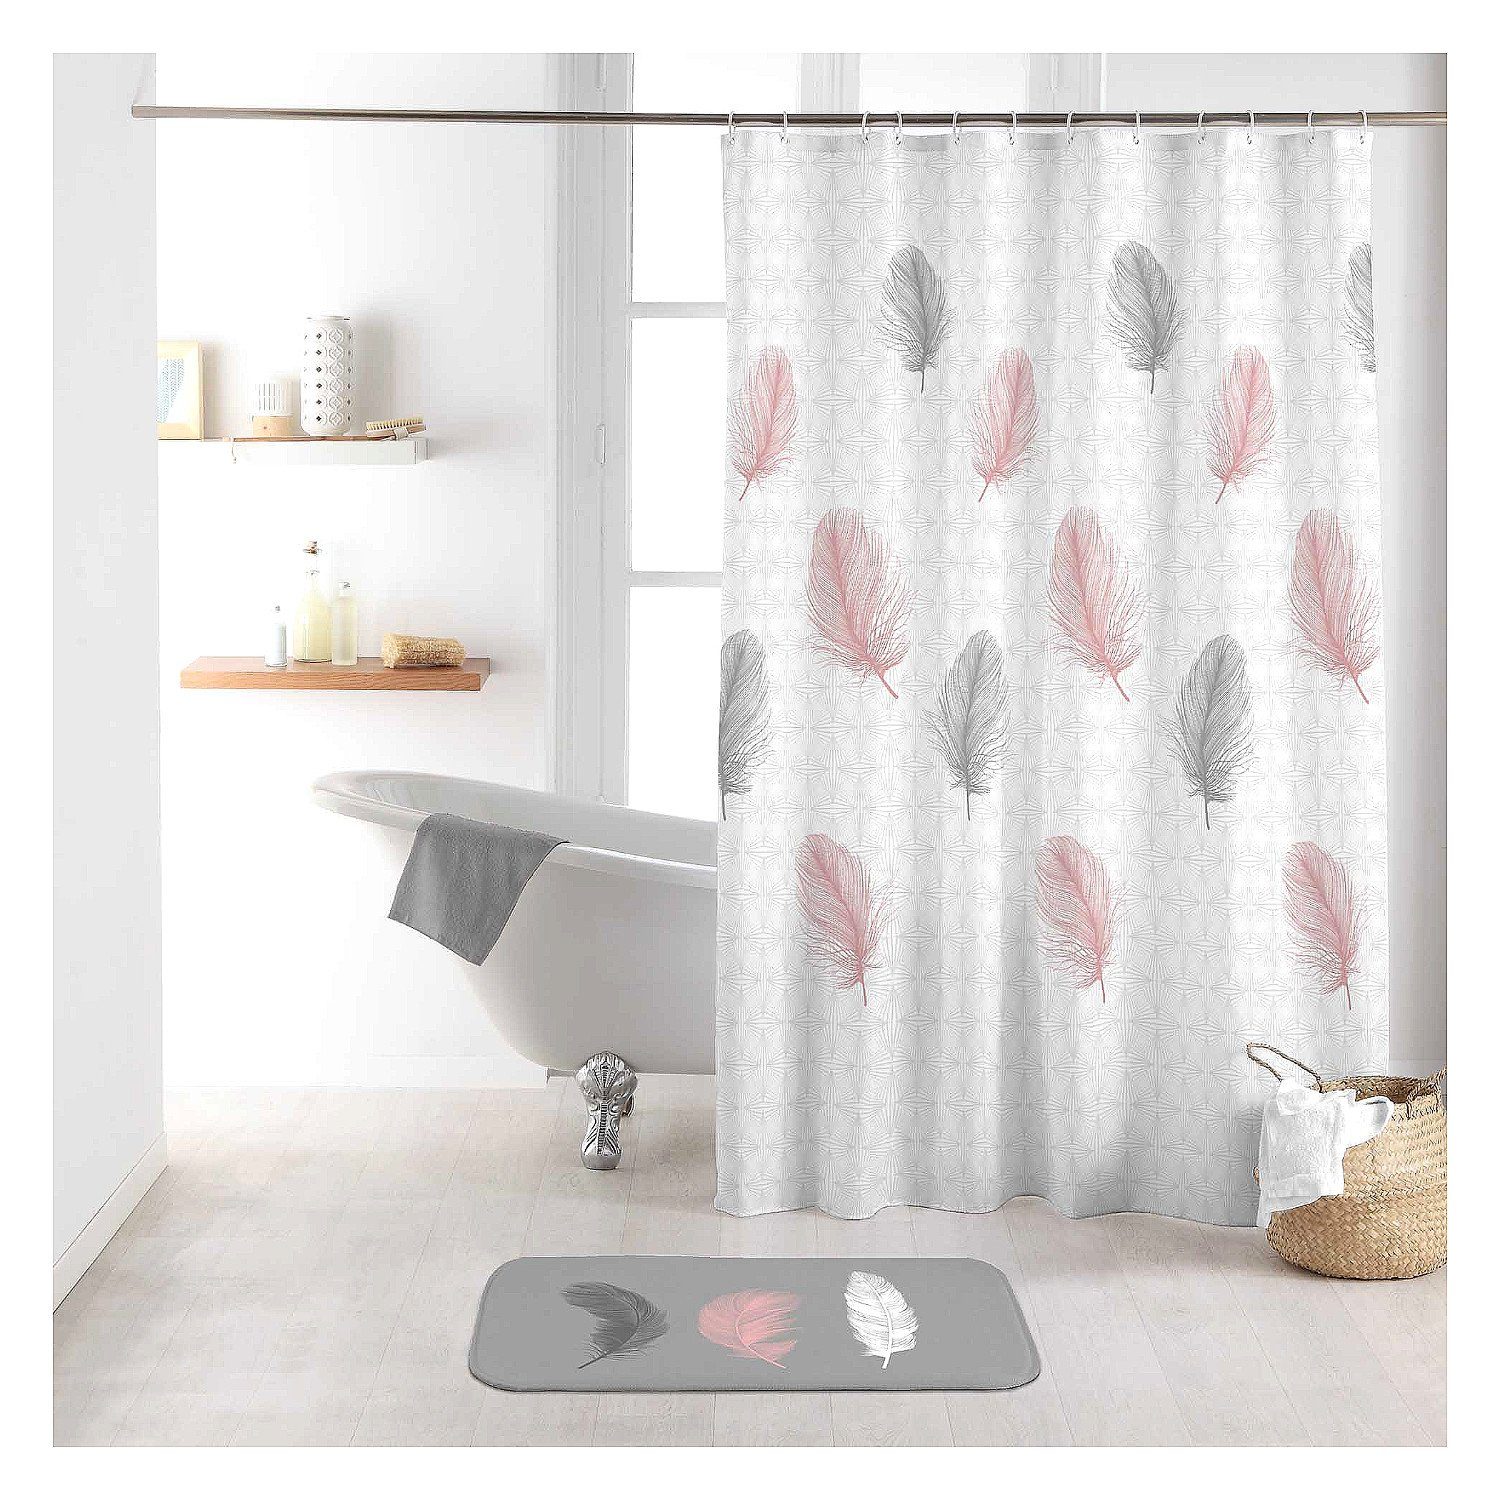 Sanixa Duschvorhang Breite 180 cm, Duschvorhang Textil 180x200 cm Federn  weiß rosa grau wasserabweisend waschbar Badewannenvorhang Vorhang  hochwertige Qualität mit Ringen Metallösen